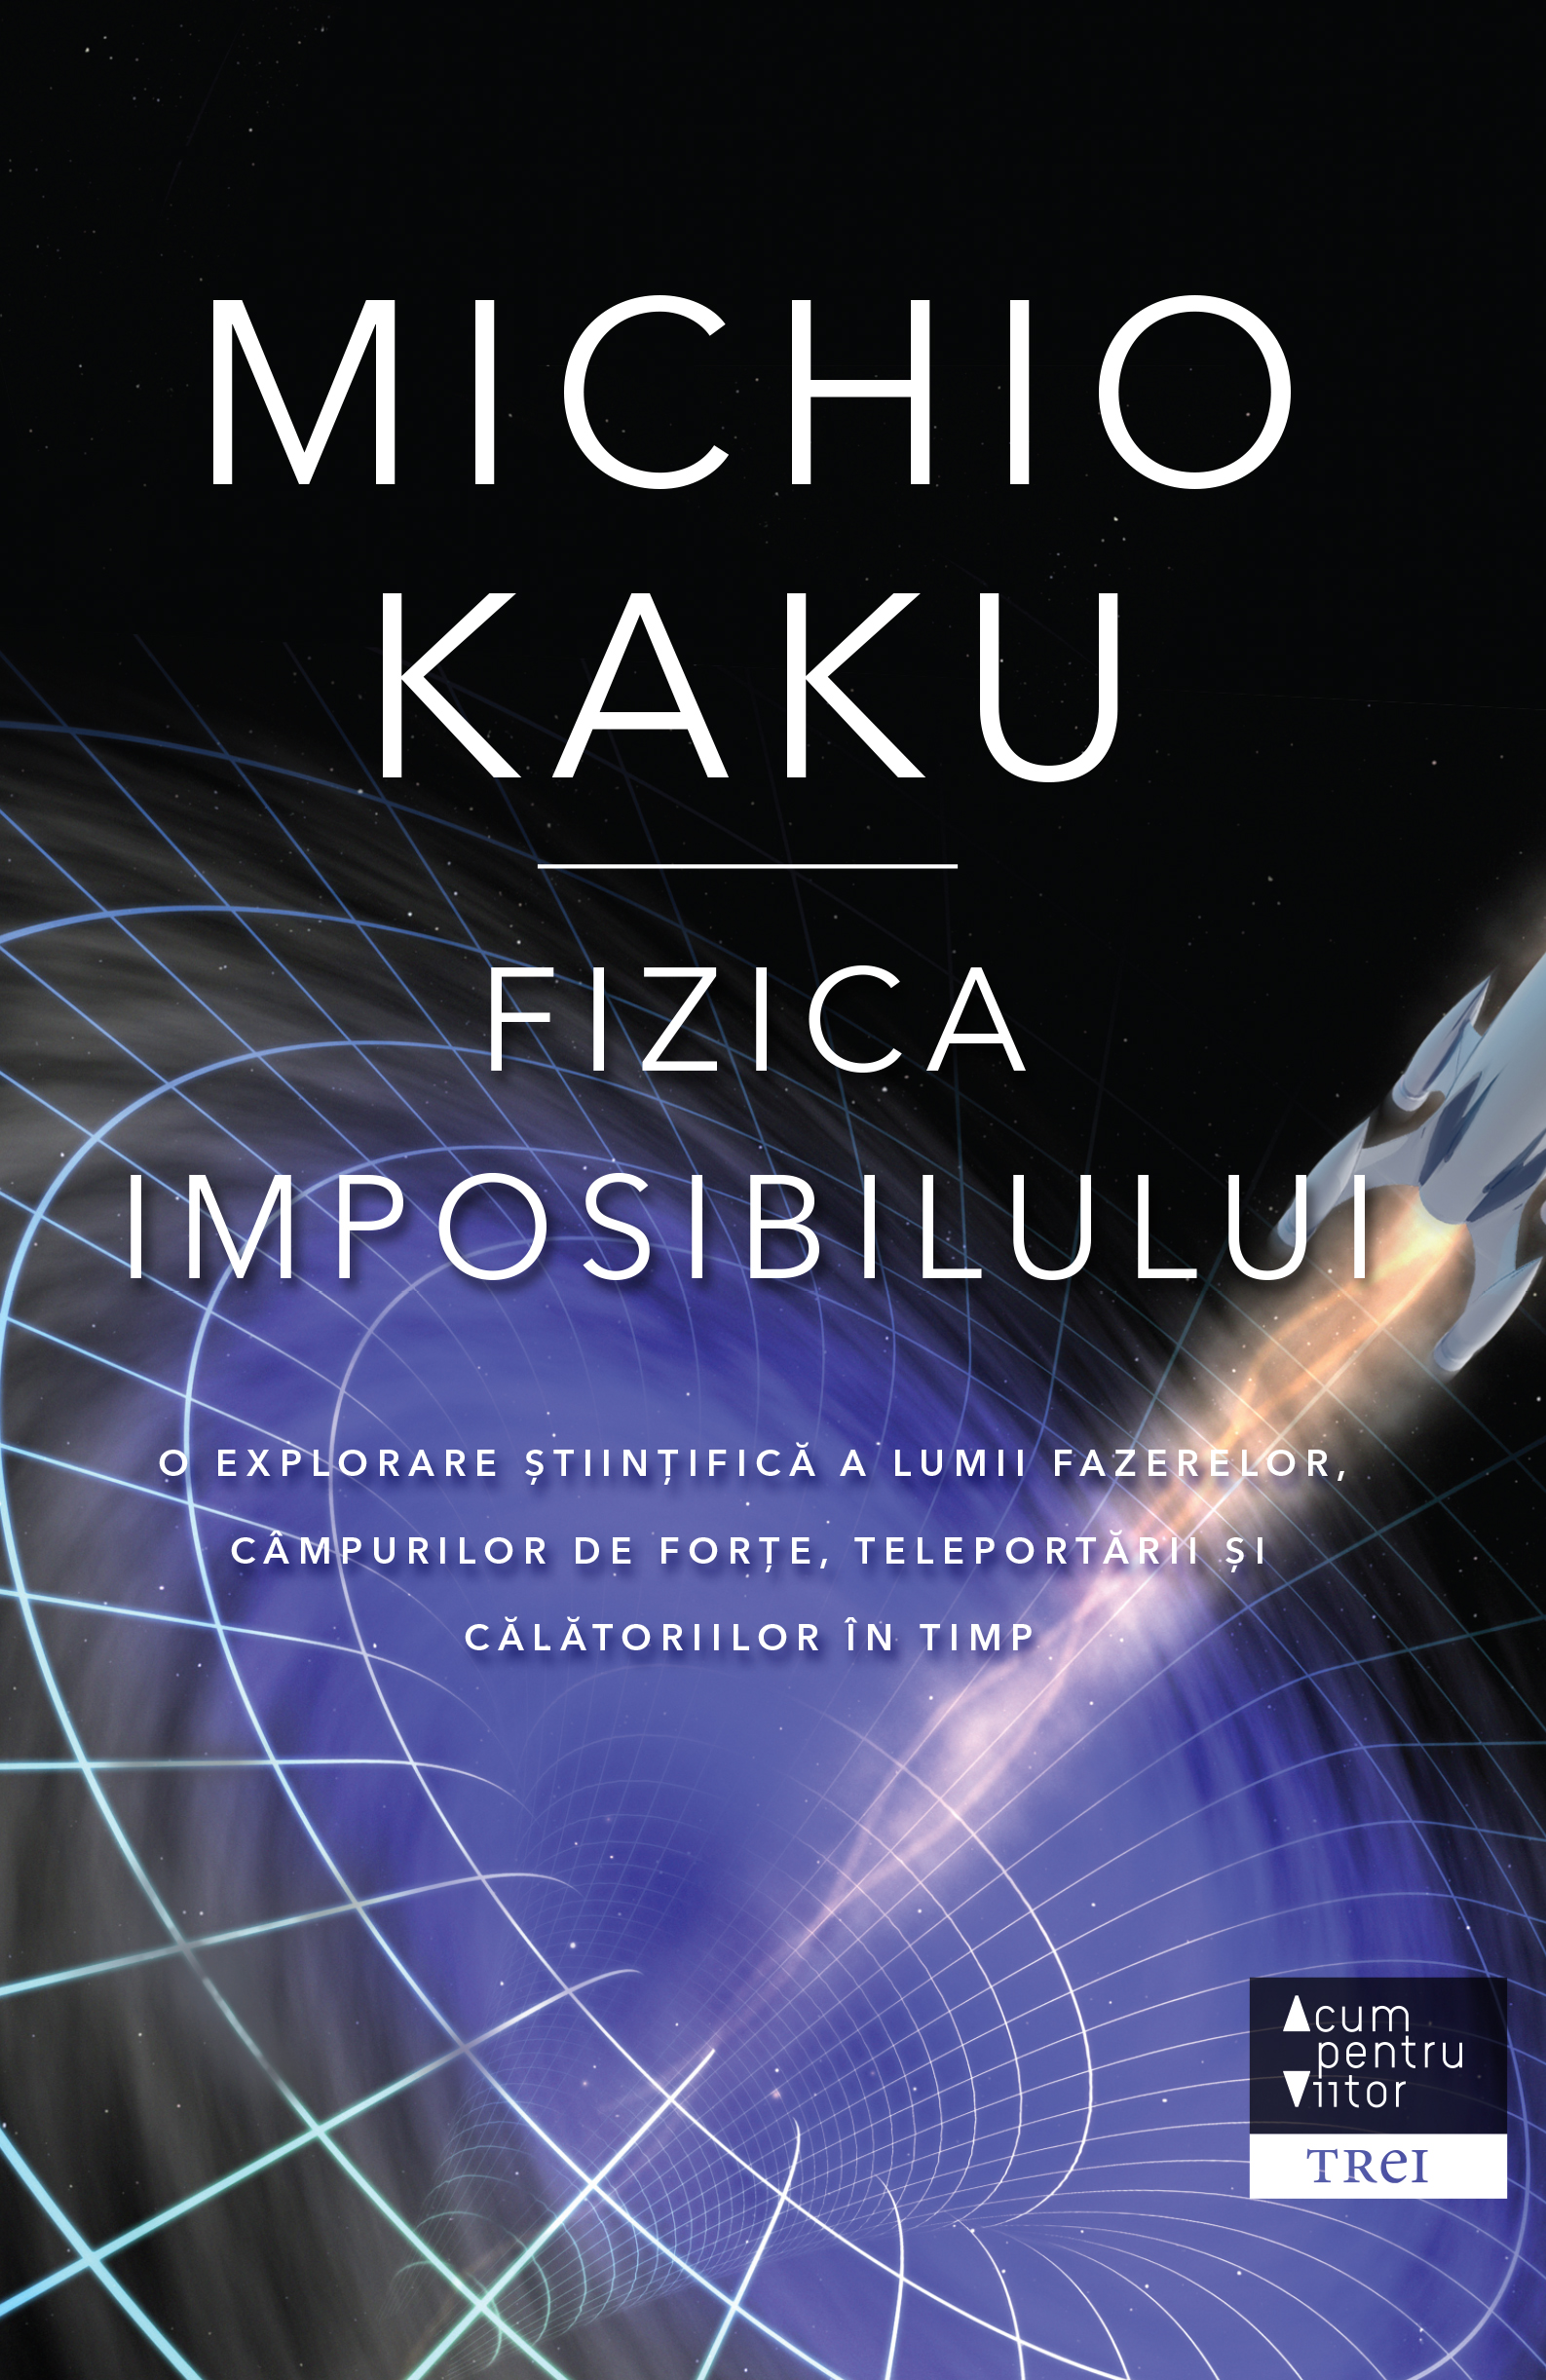 Fizica imposibilului | Michio Kaku